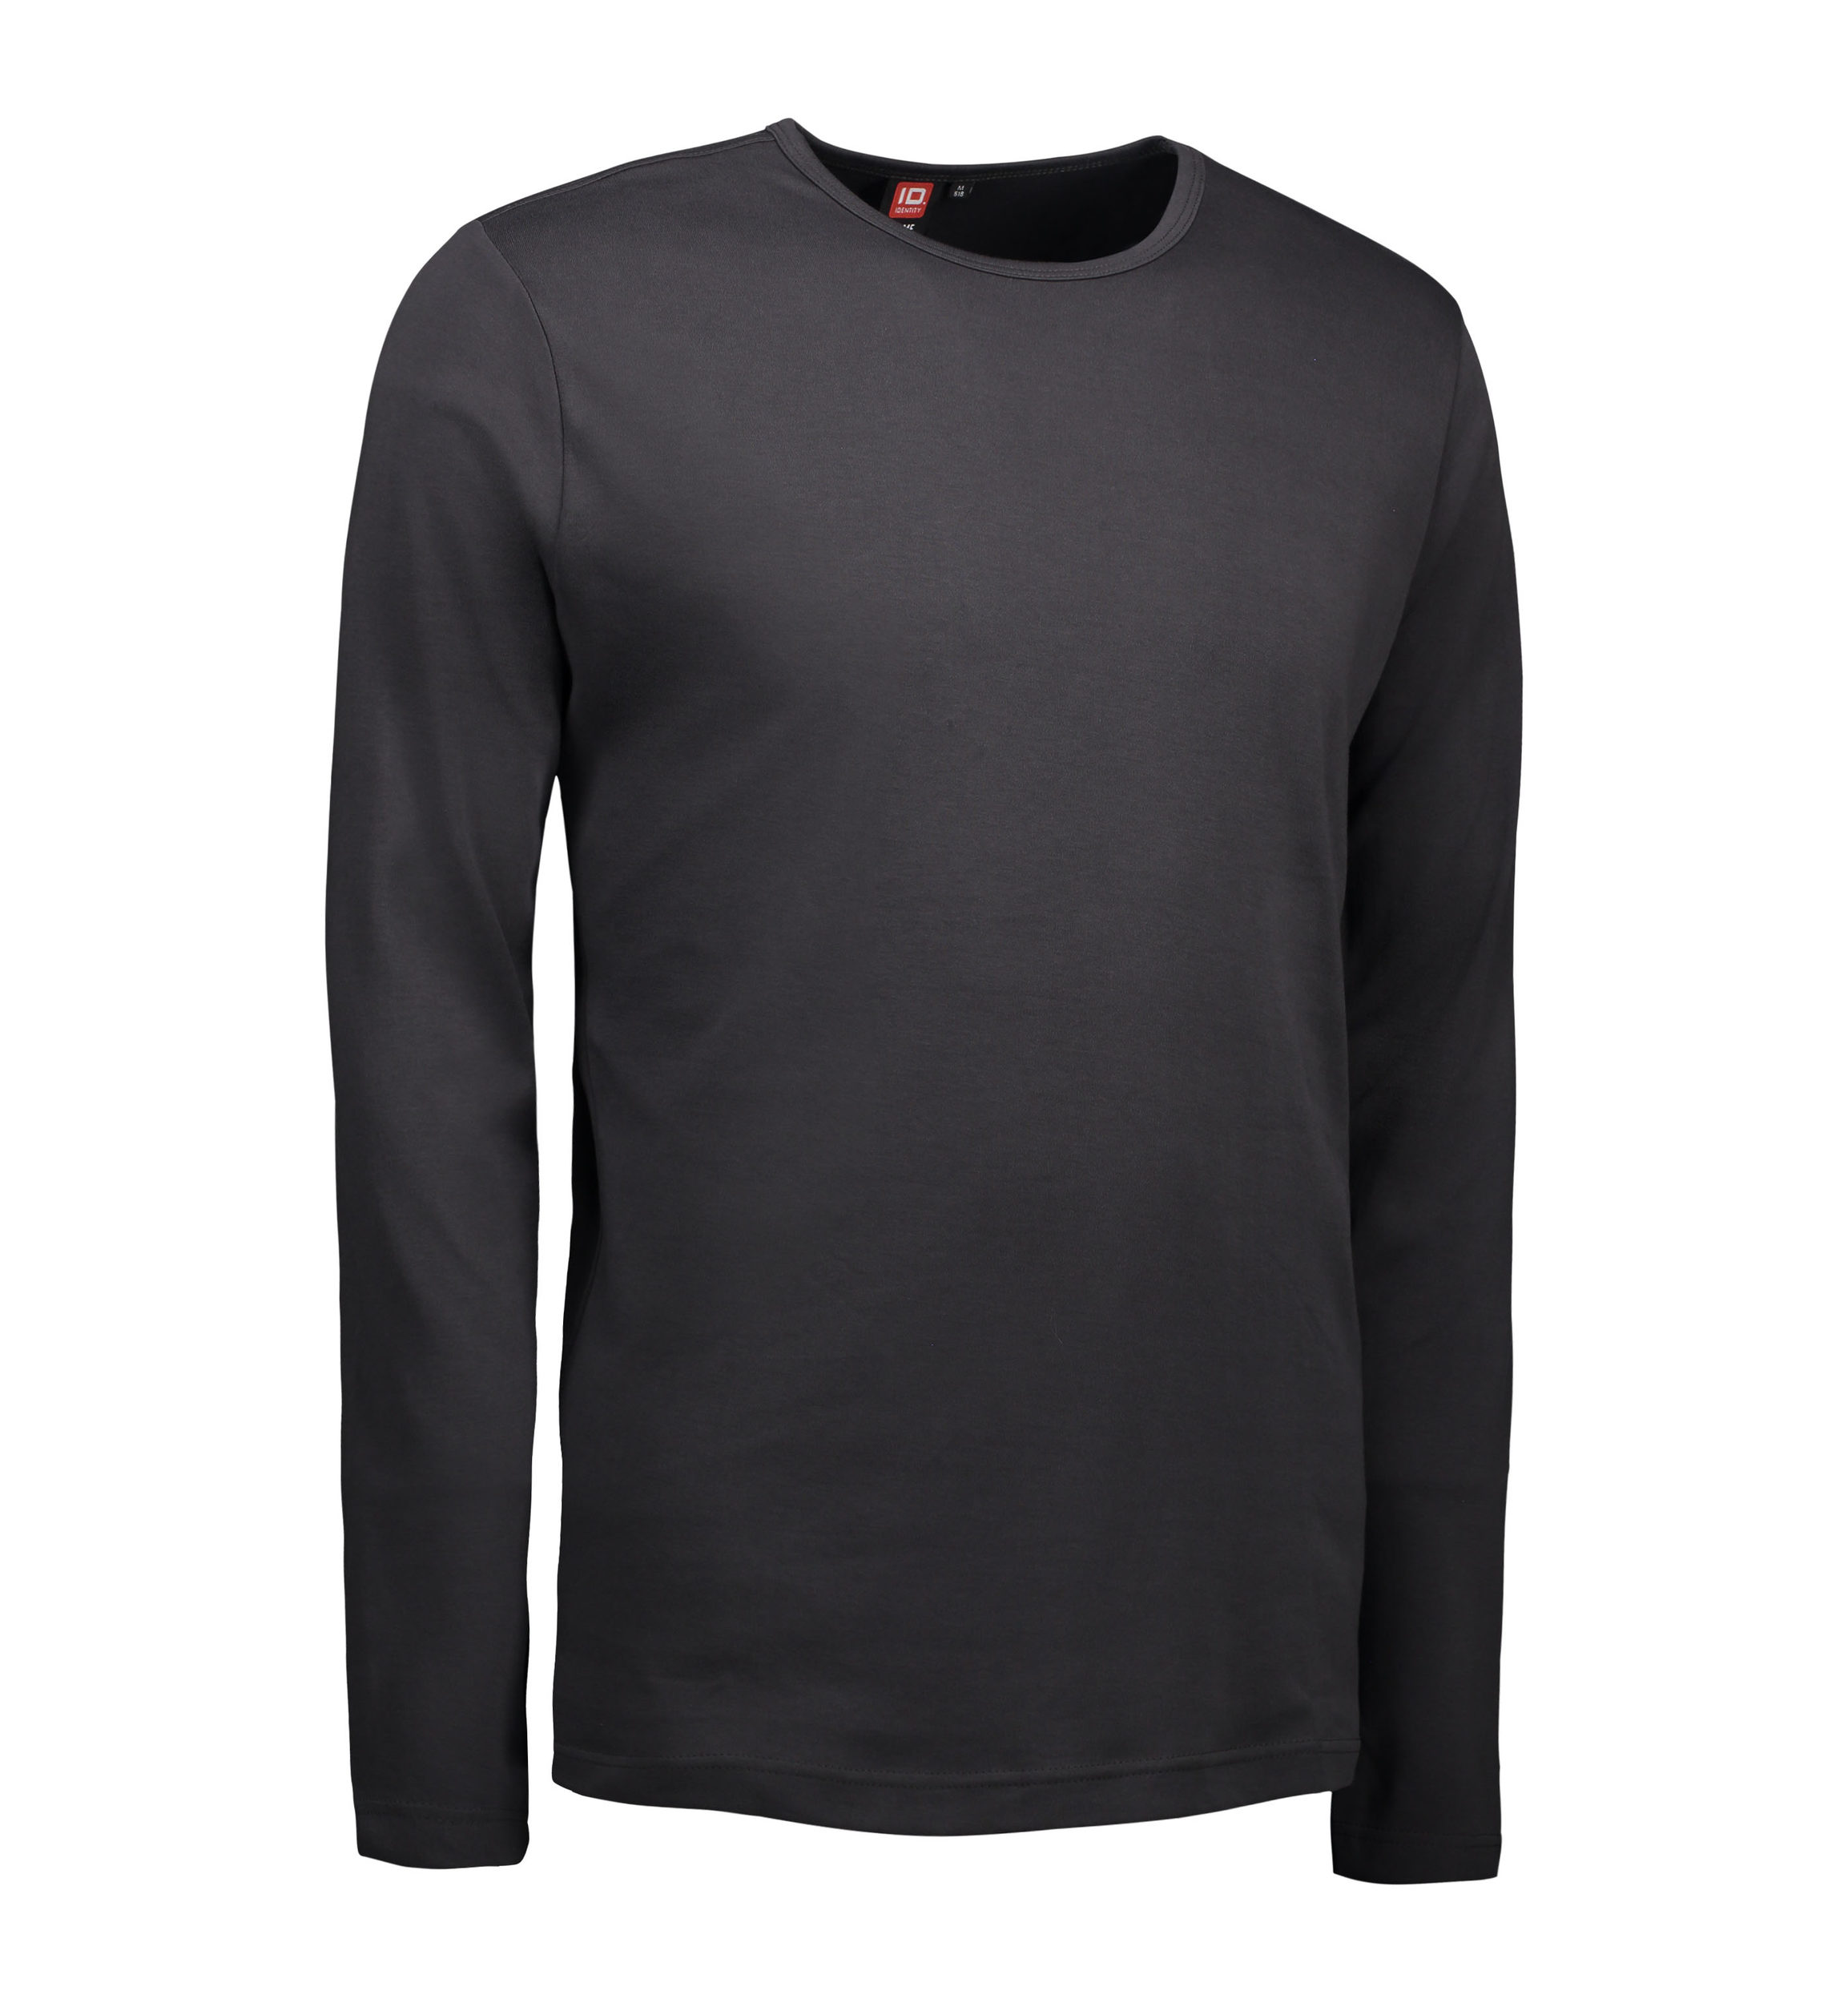 Se Koks grå langærmet t-shirt til mænd - XL hos Sygeplejebutikken.dk